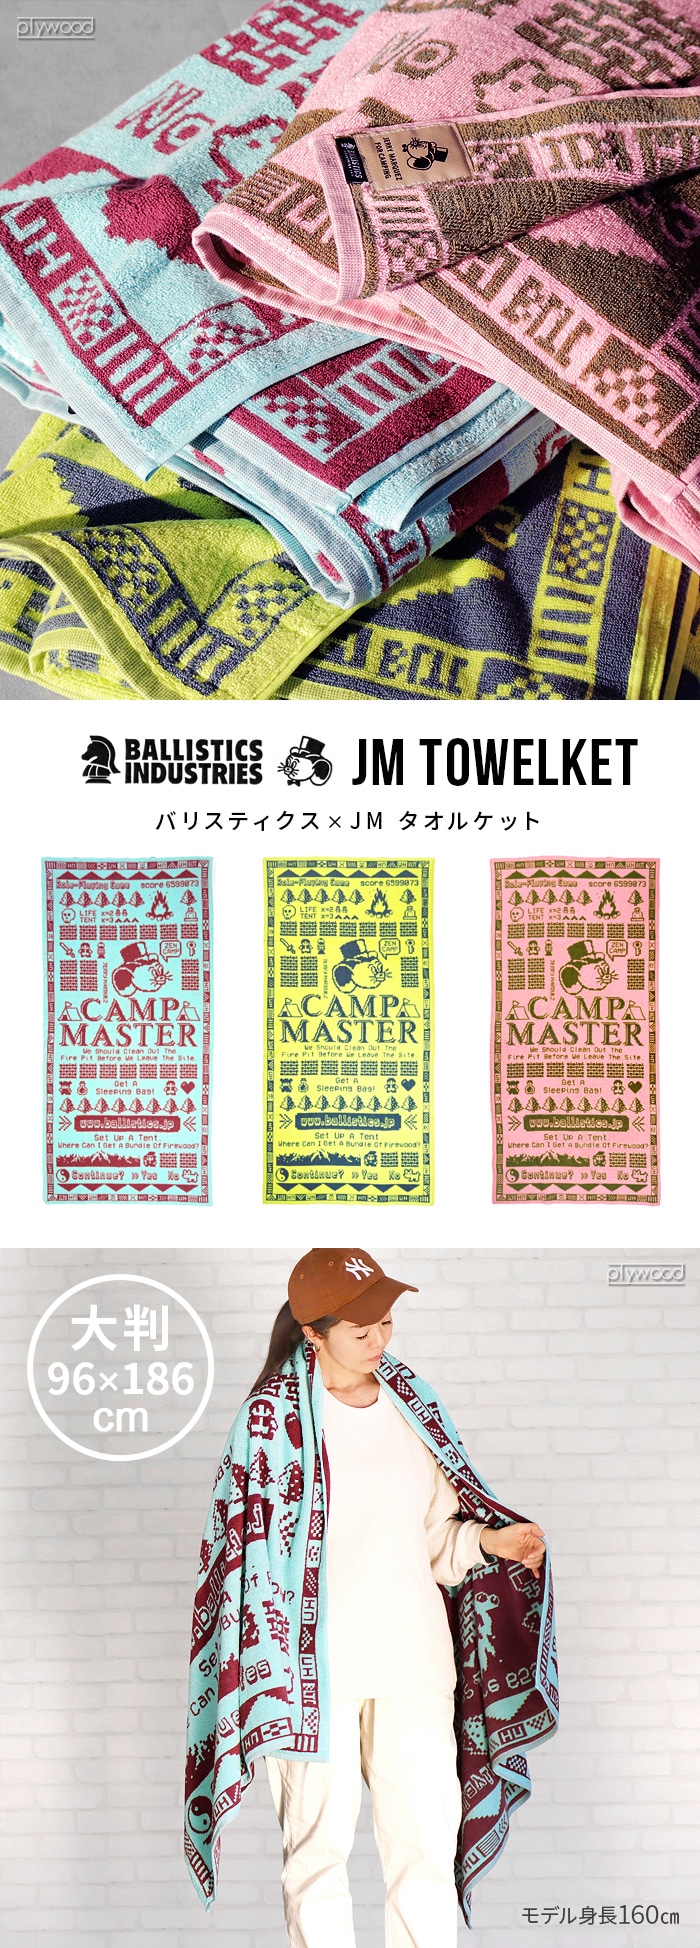 バリスティクス ジェリーマルケス タオルケット BALLISTICS JM TOWELKET BAA-2317 | ファブリック